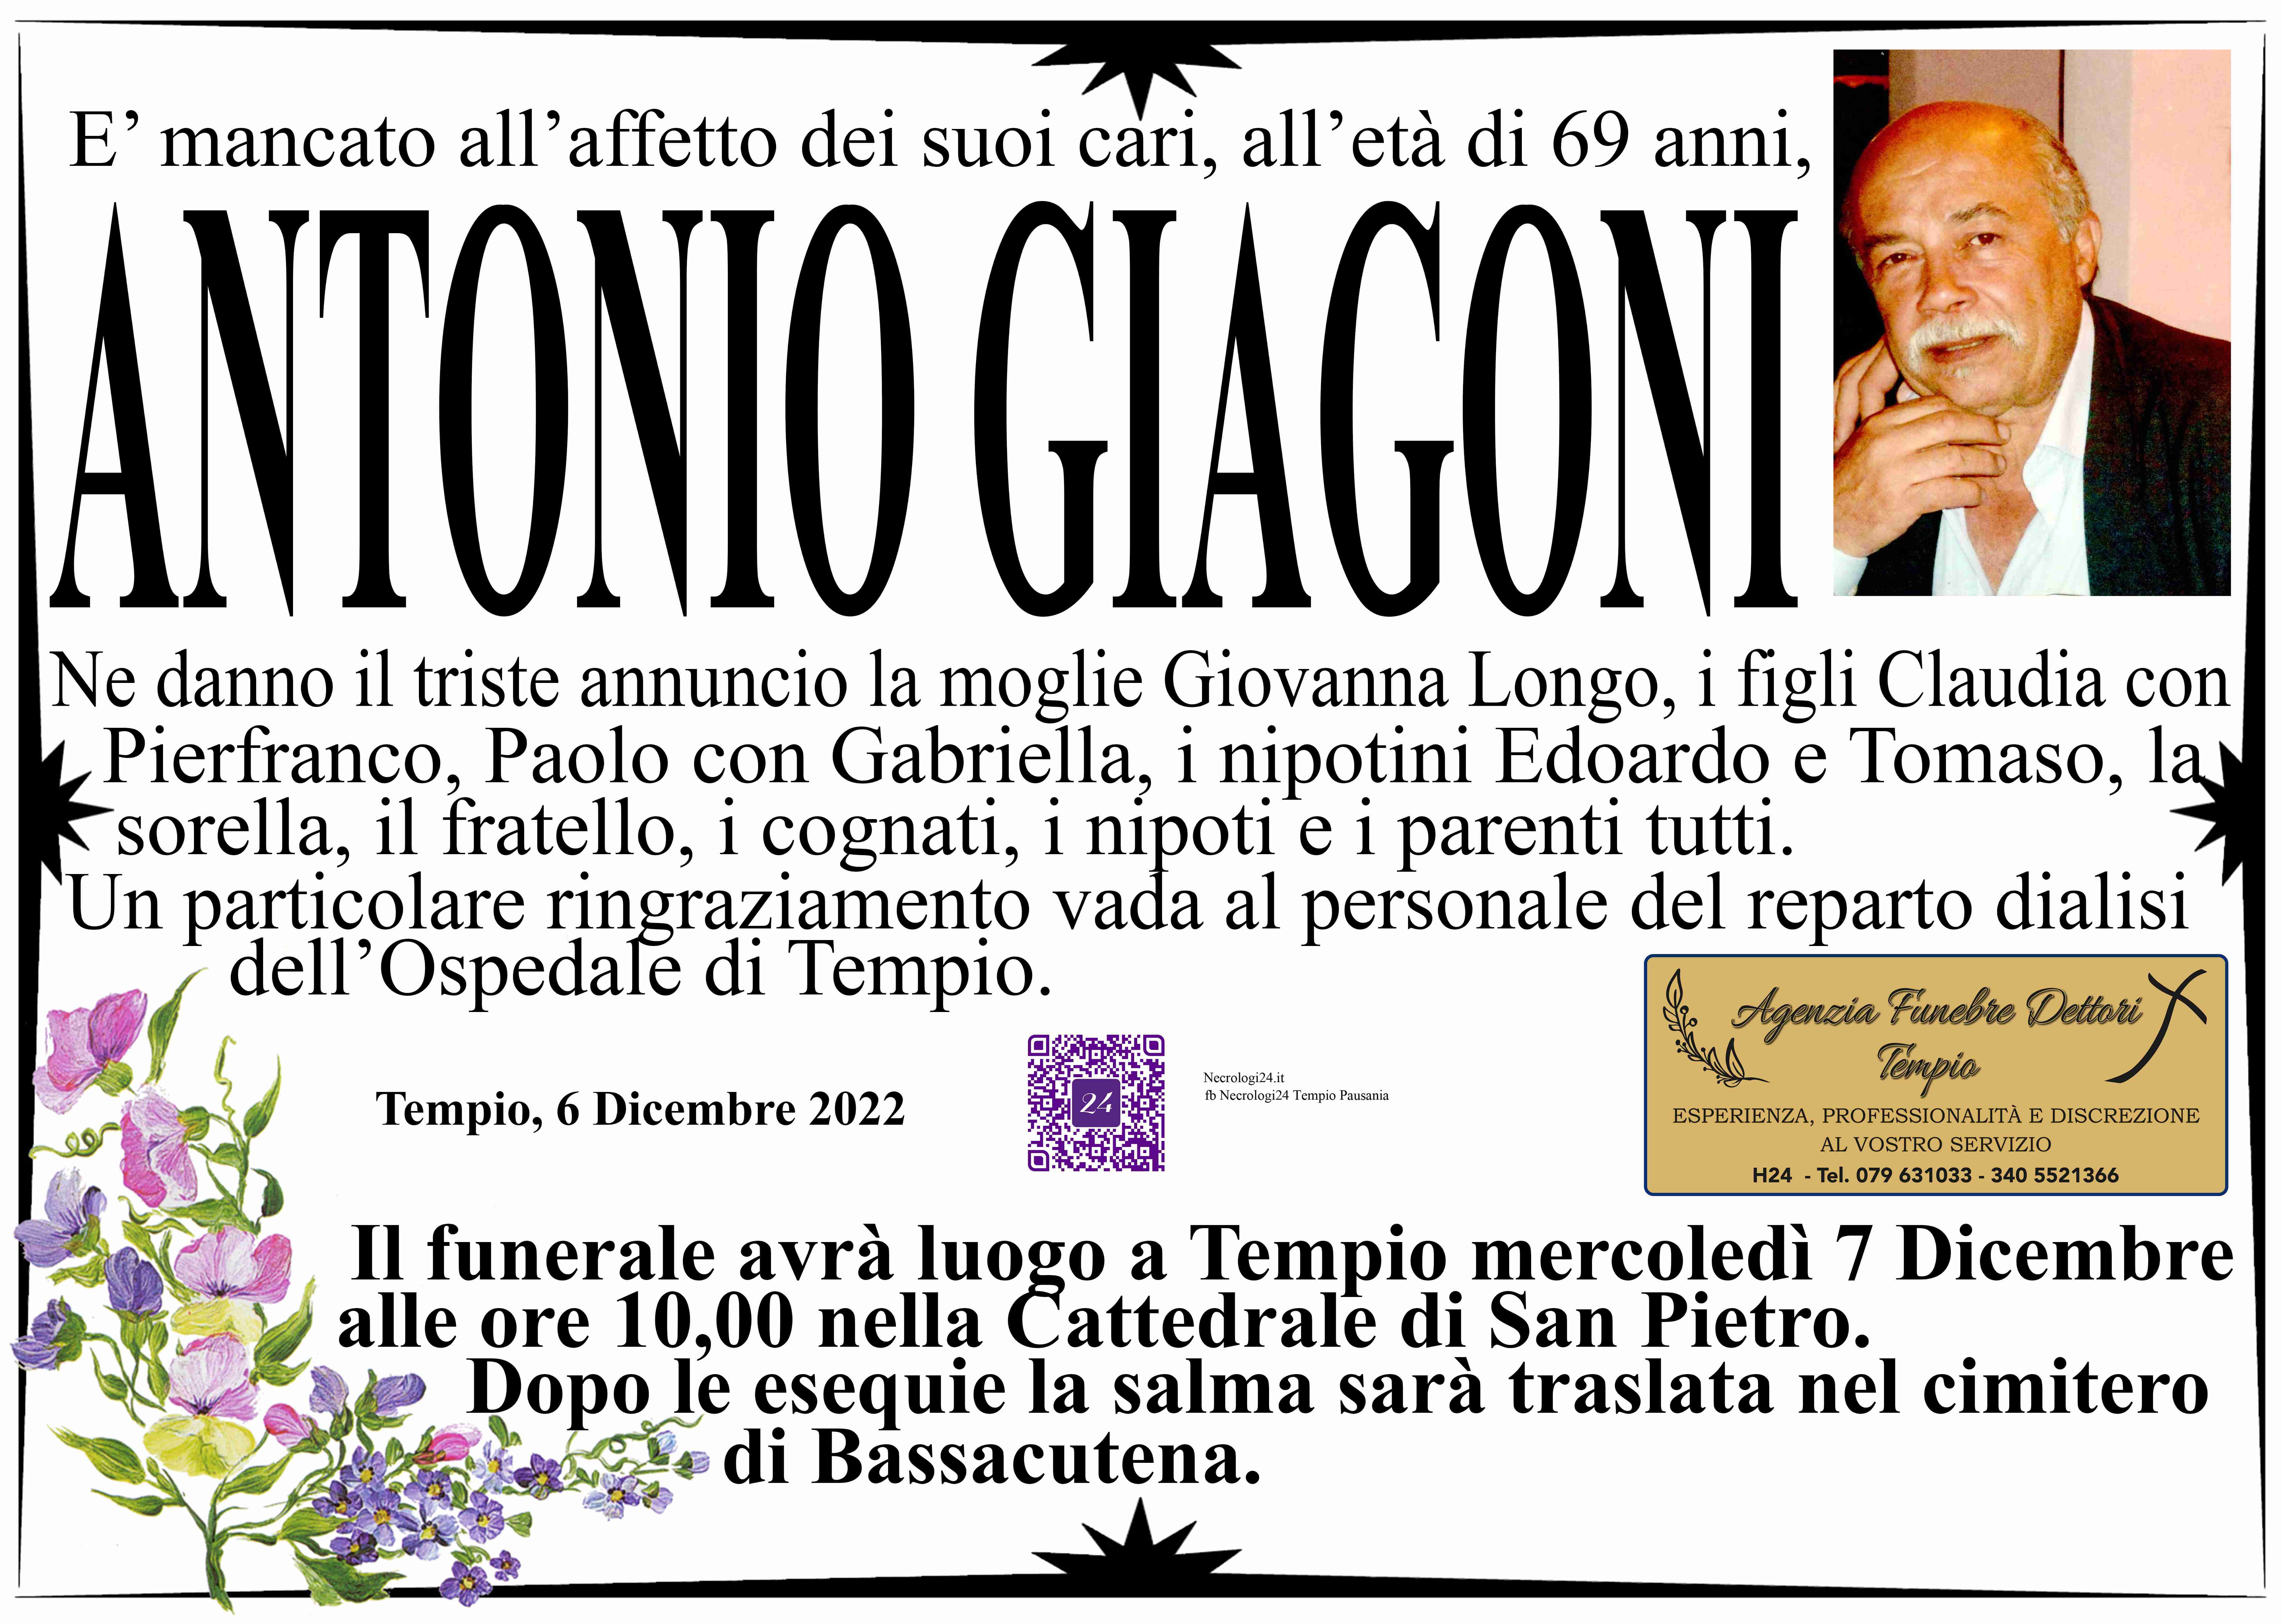 Antonio Giagoni